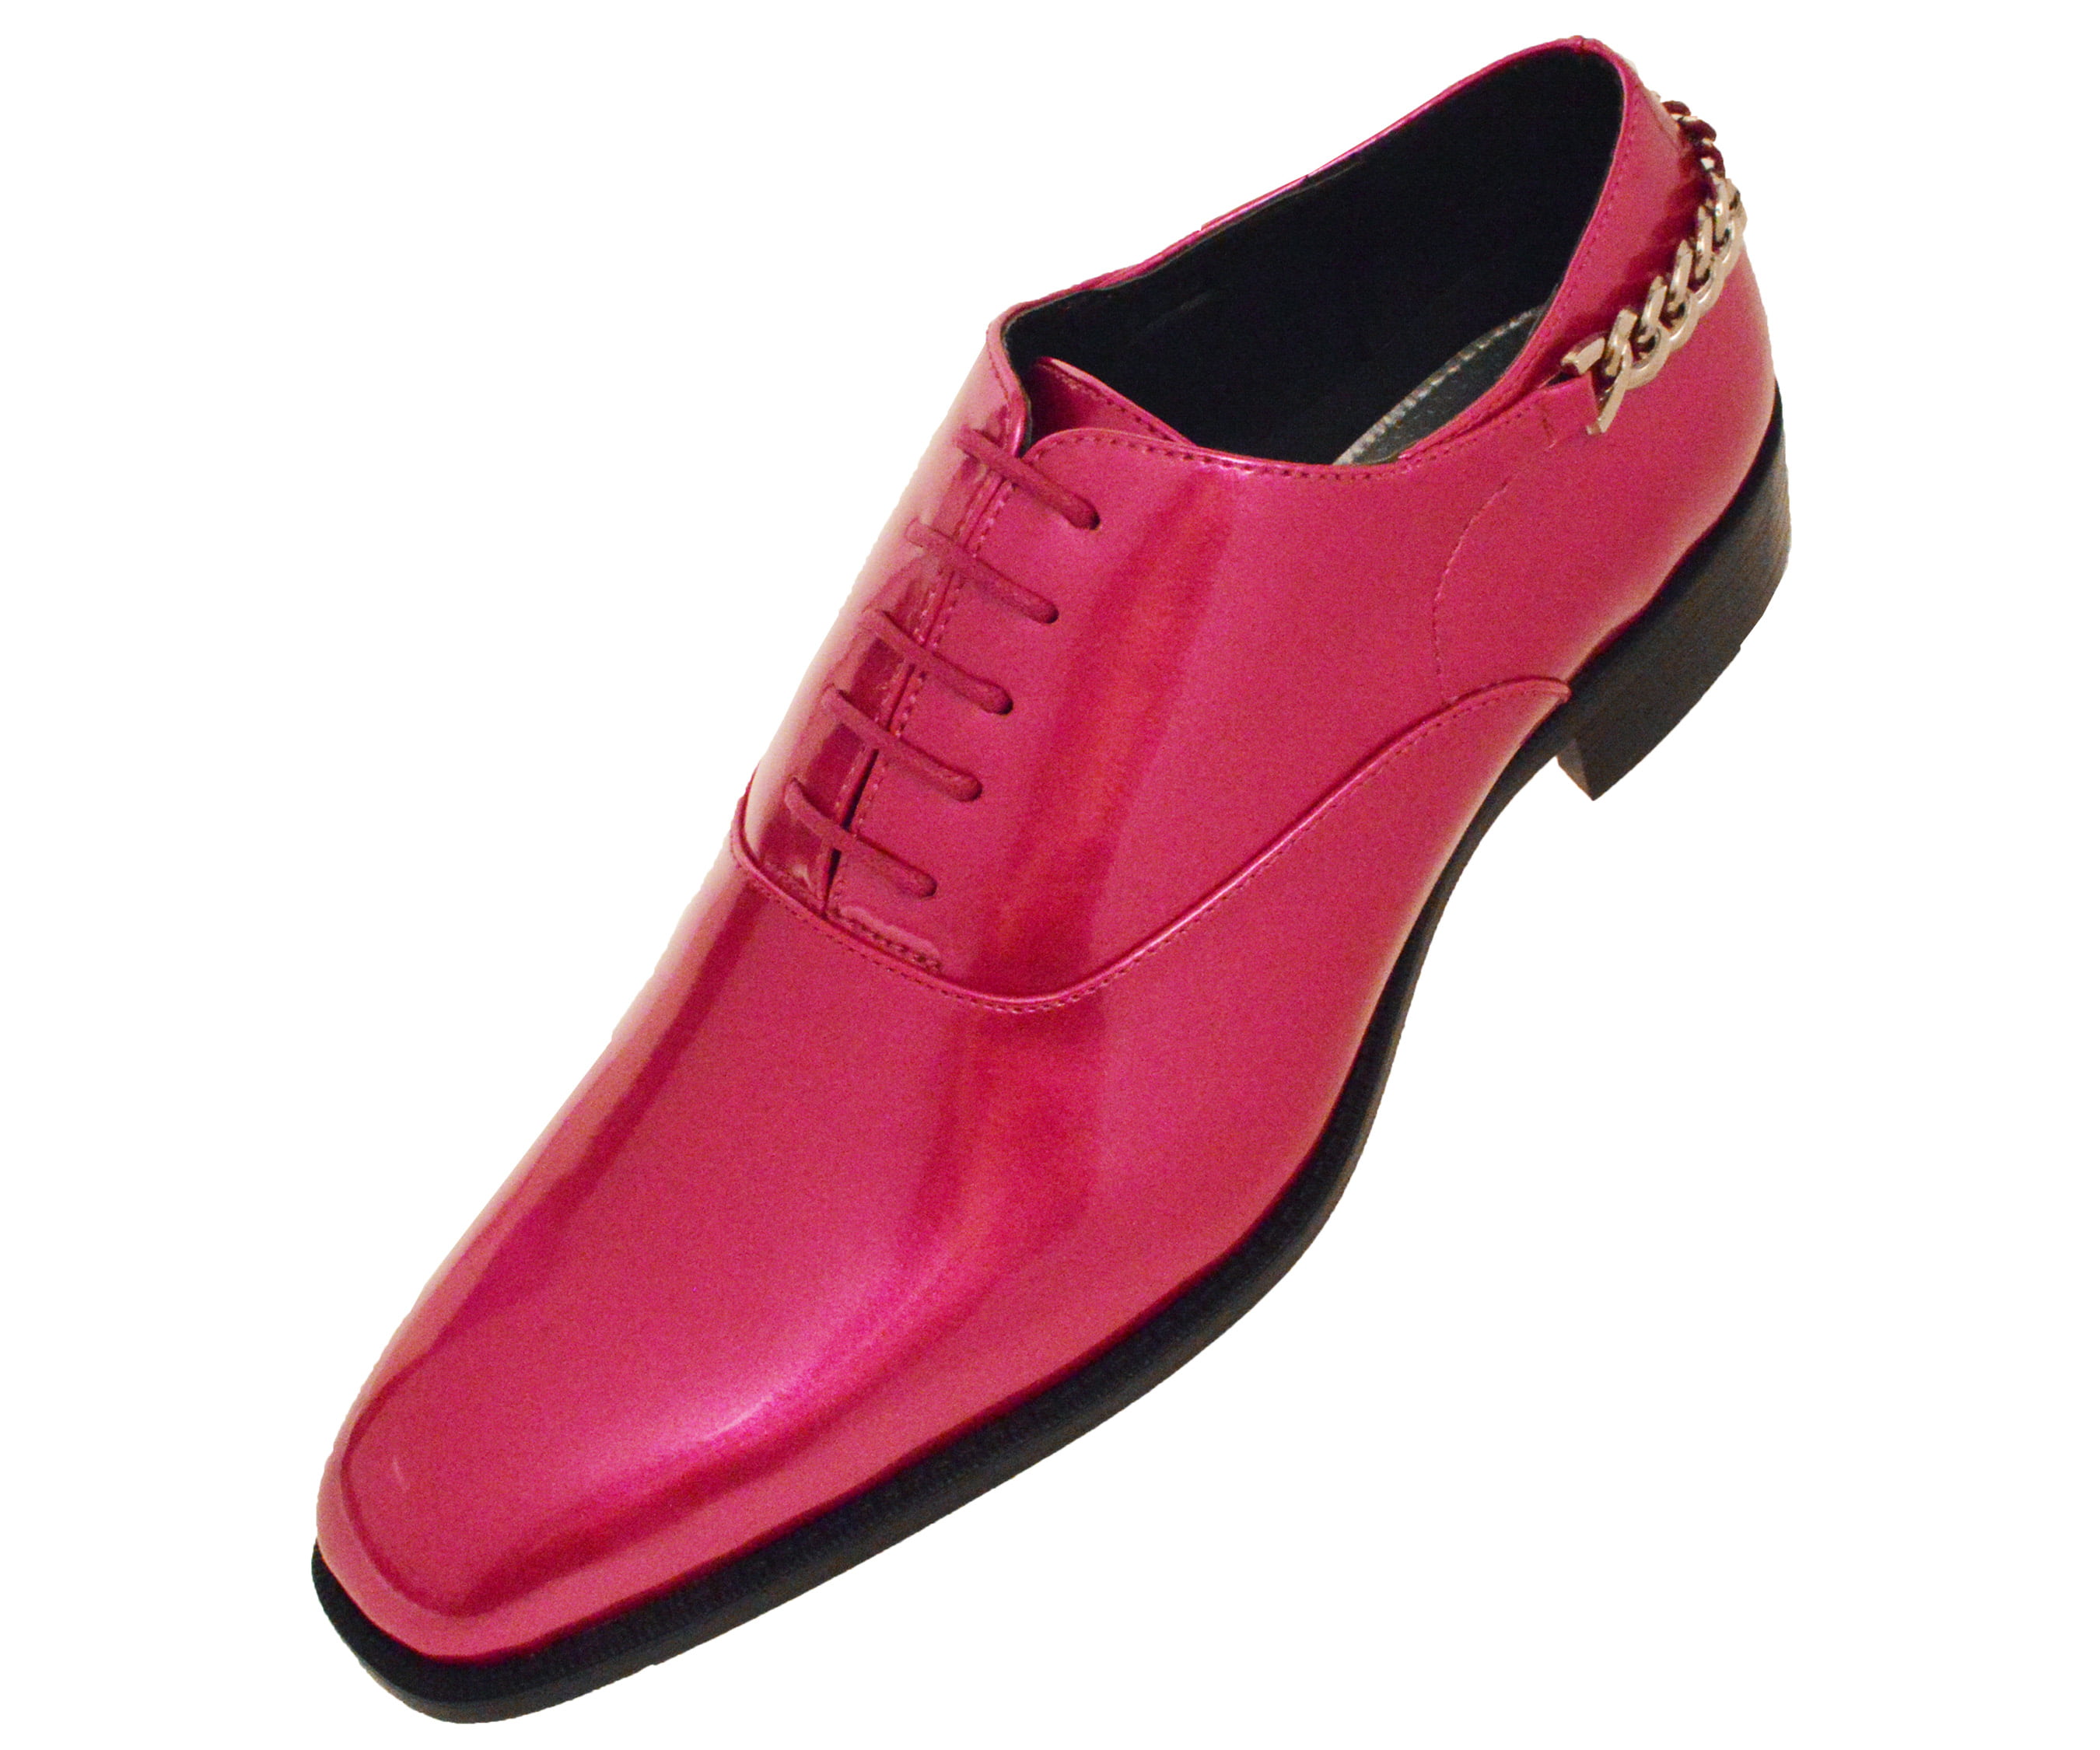 Bolano - Bolano Mens Smooth Shiny Patent Plain Toe Oxford Dress Shoe ...